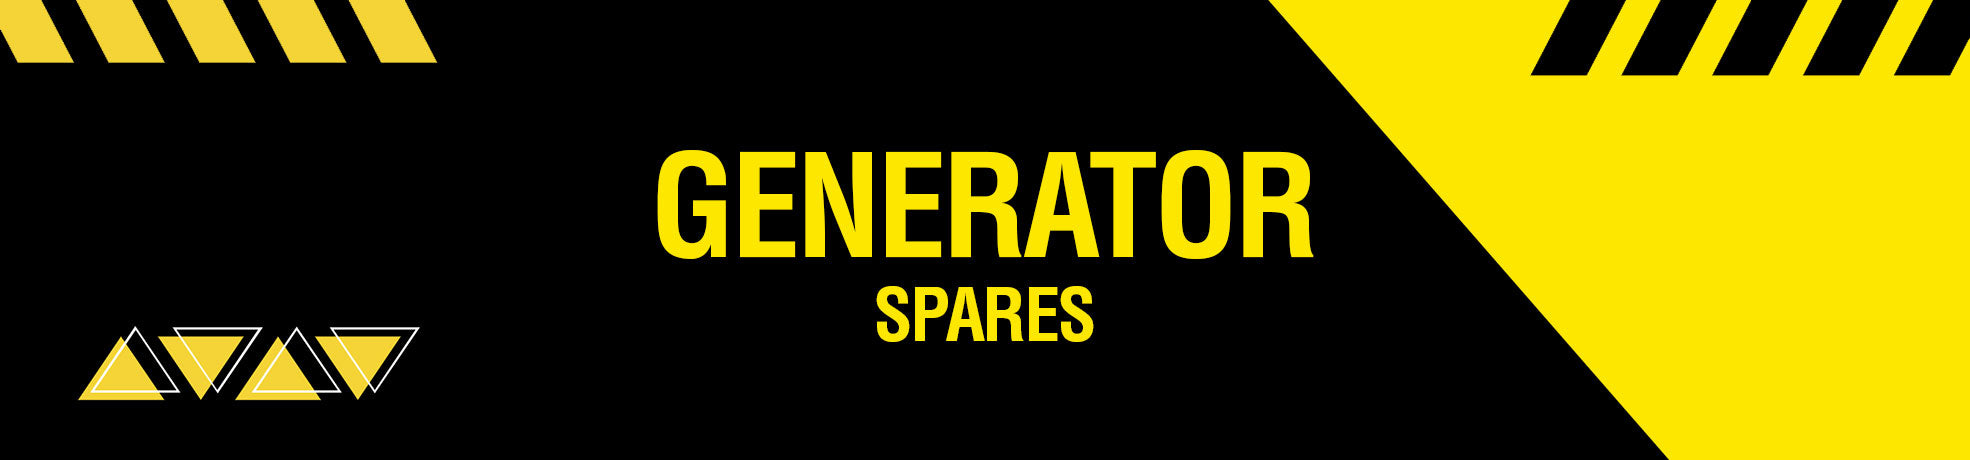 Generator Spares